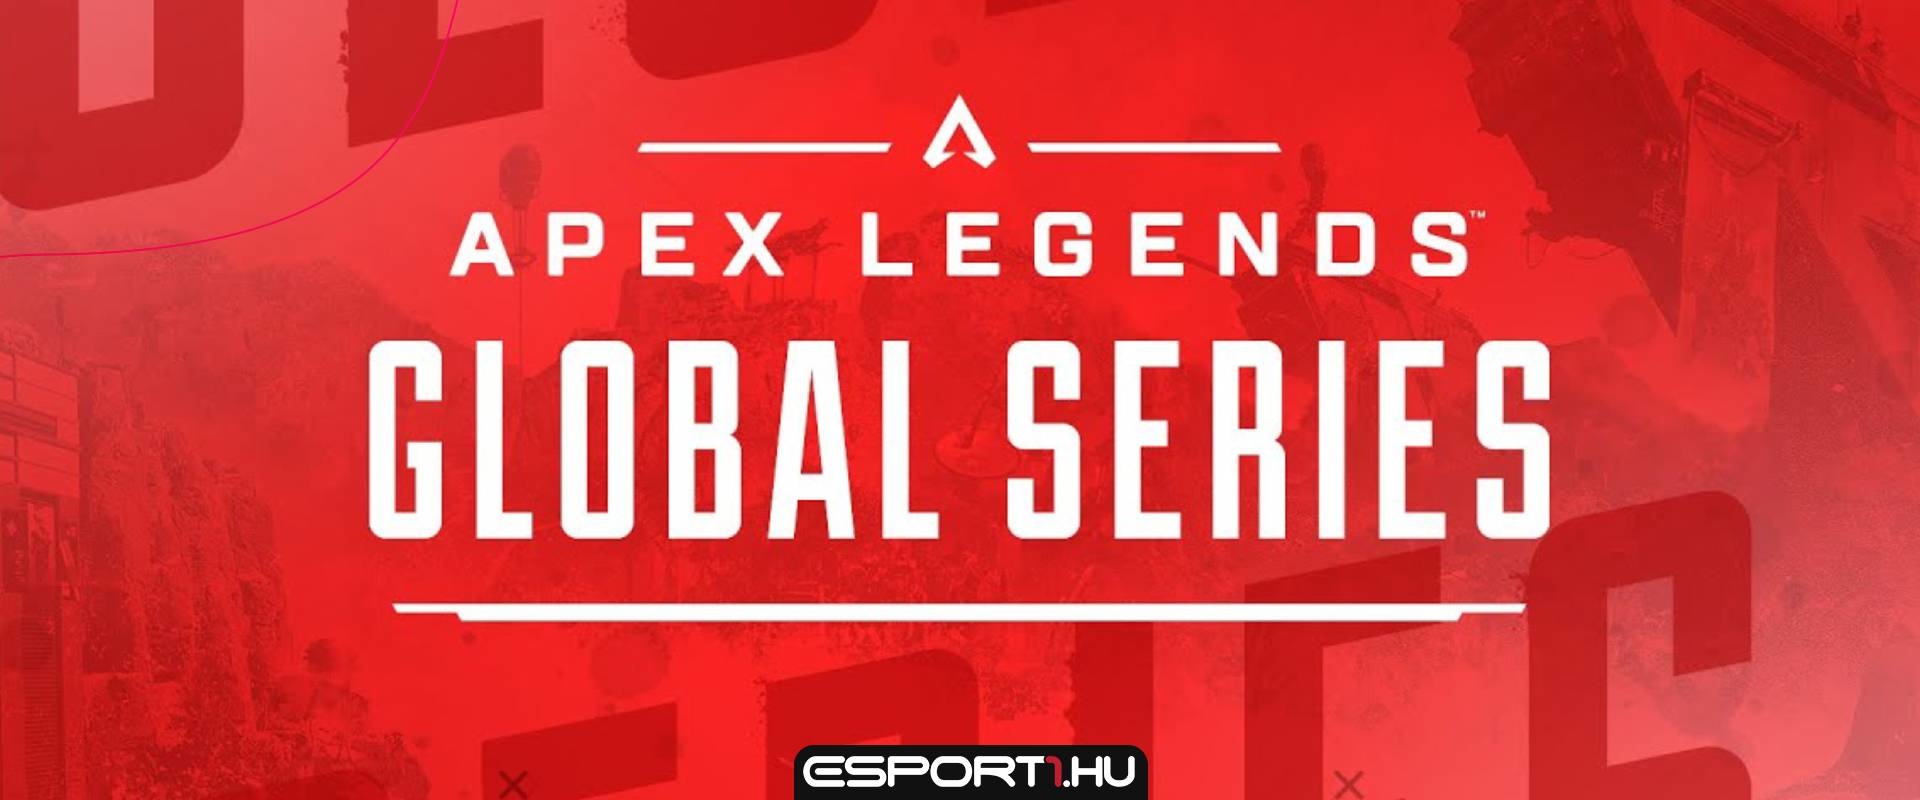 A Respawn ledobta a kompetitív atomot: Jön az Apex Legends Global Series